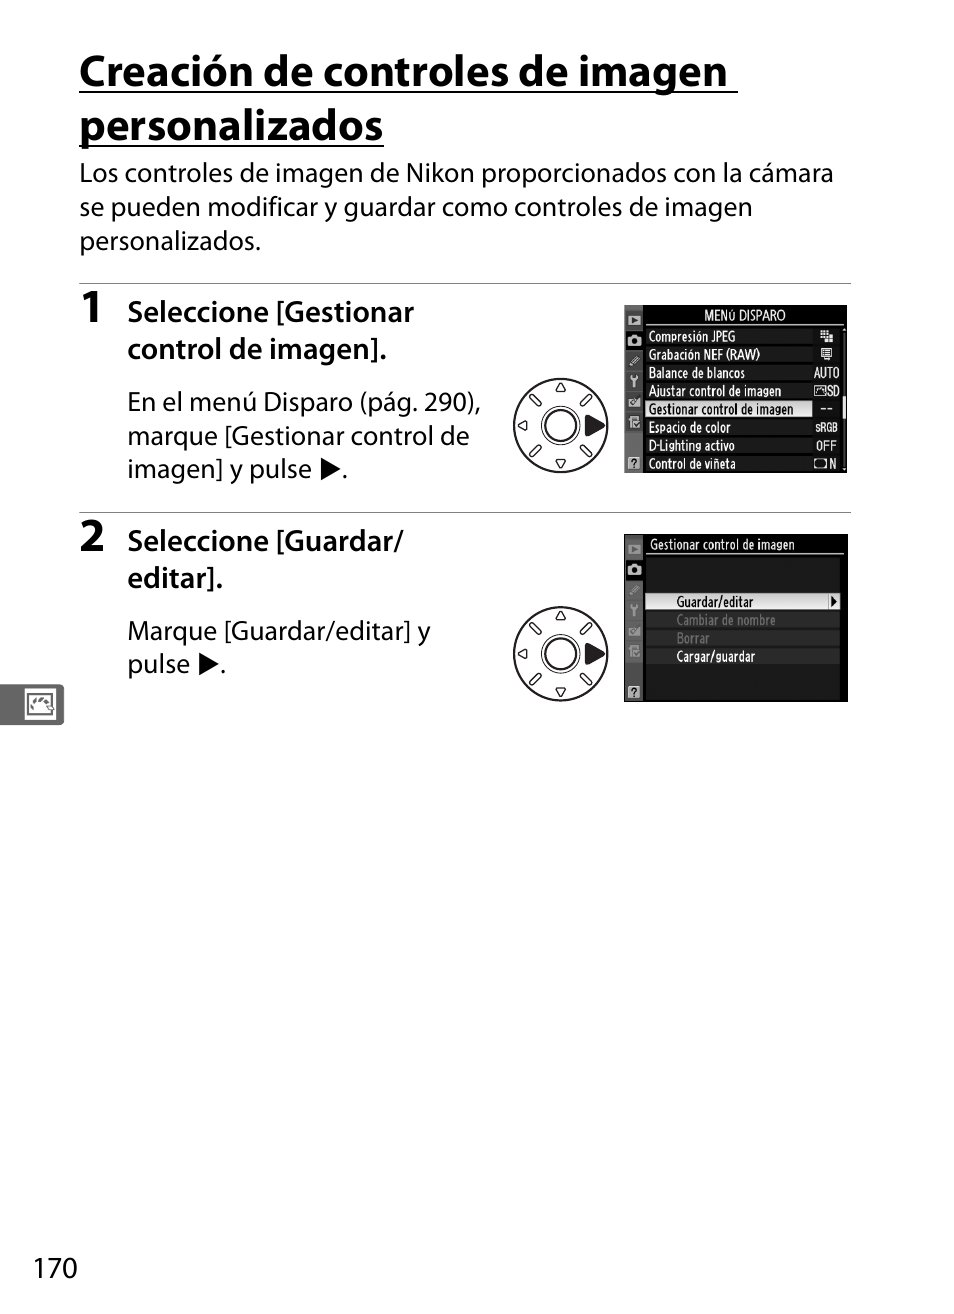 Creación de controles de imagen personalizados | Nikon D3X Manual del usuario | Página 196 / 476